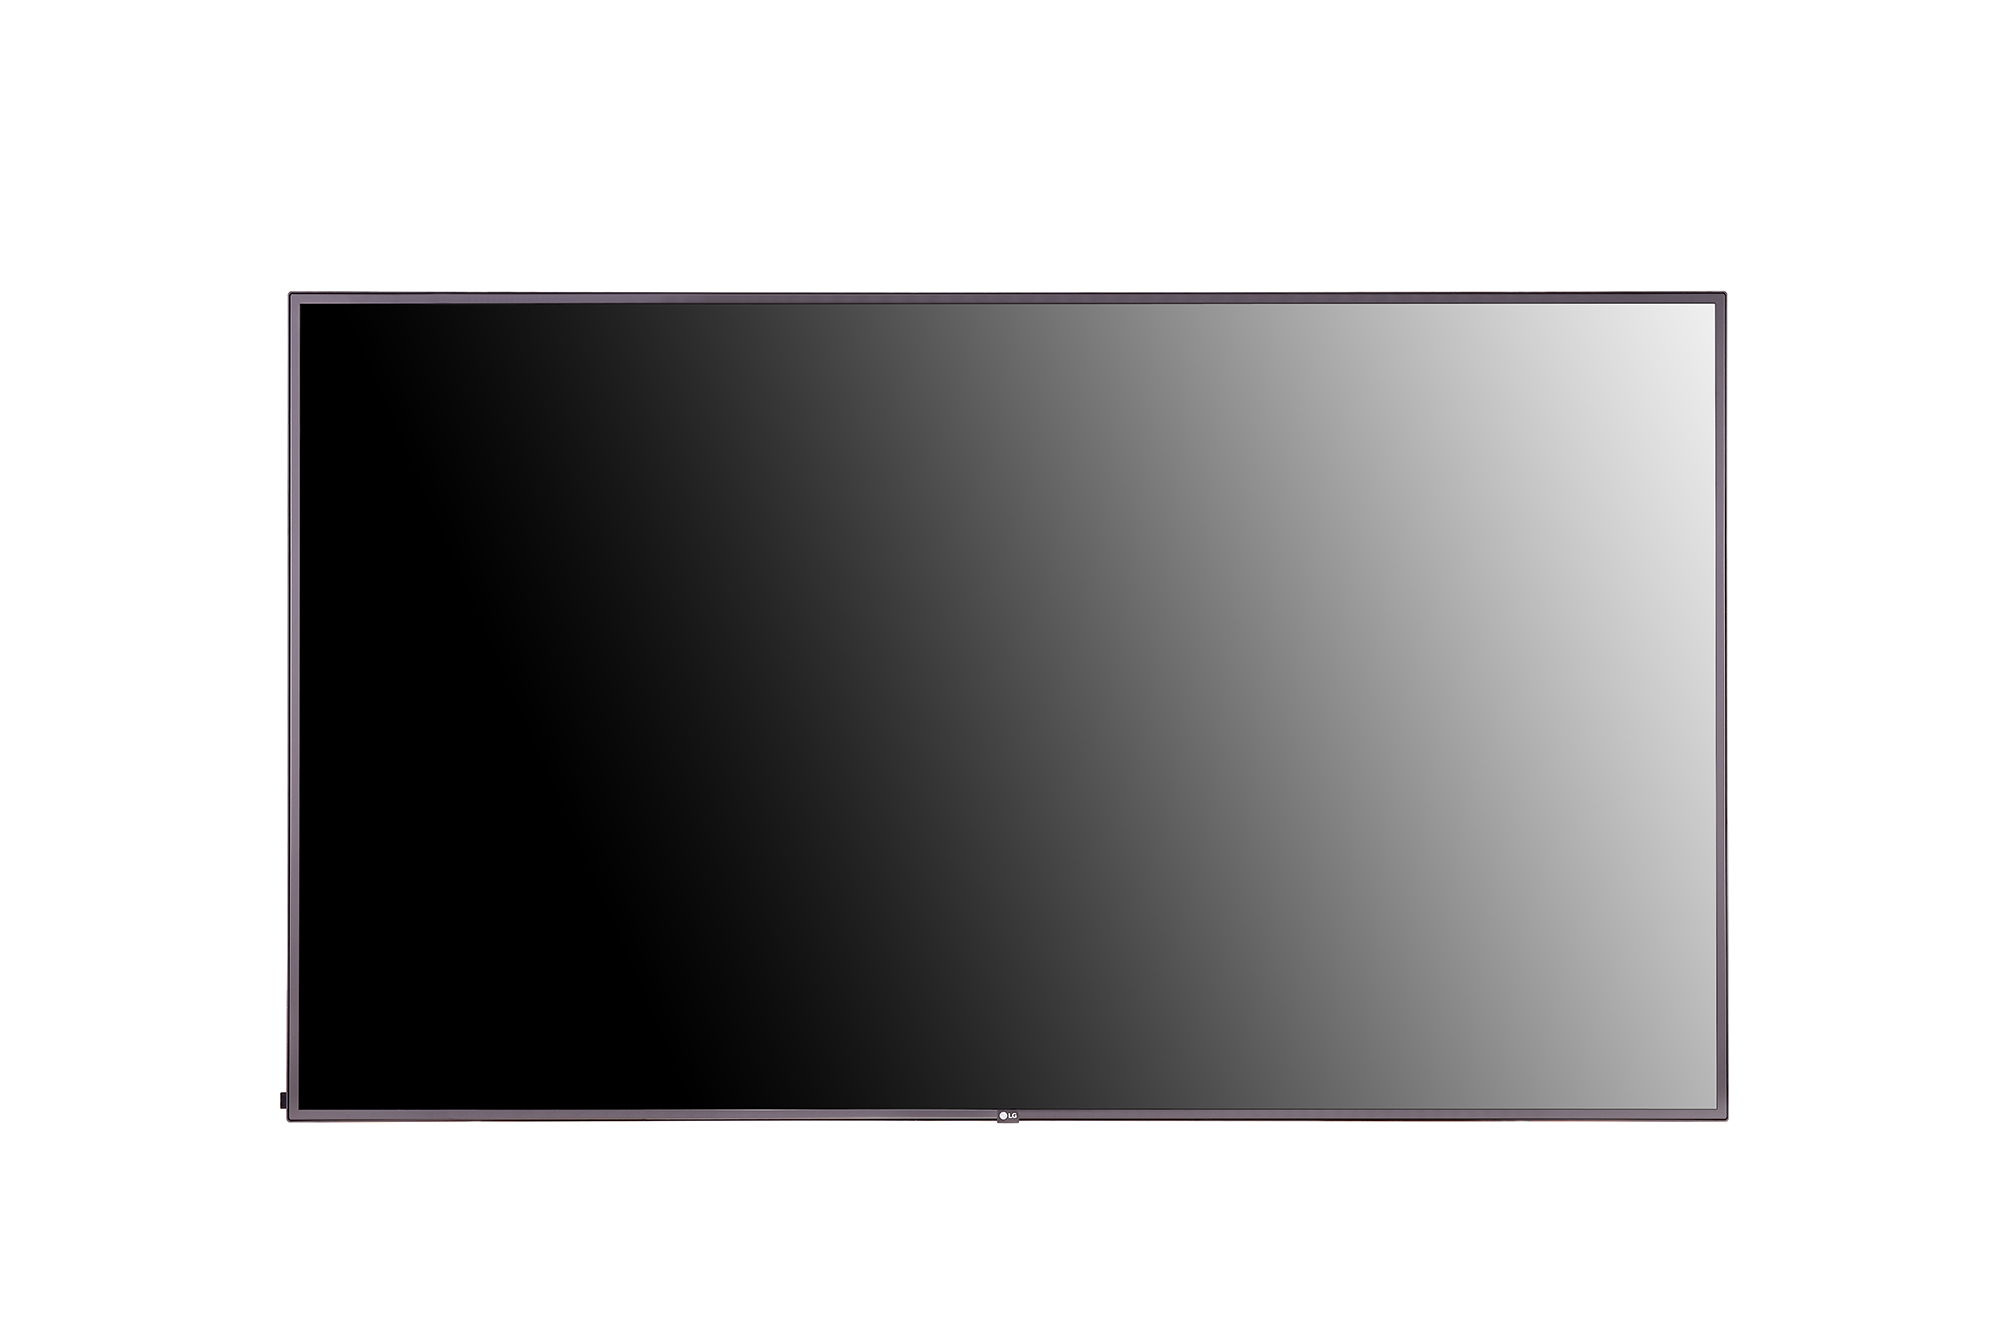 LG 86UH5J-H - 86 Zoll - 500 cd/m² - Ultra-HD - 3840x2160 Pixel - 24/7 - webOS - Display